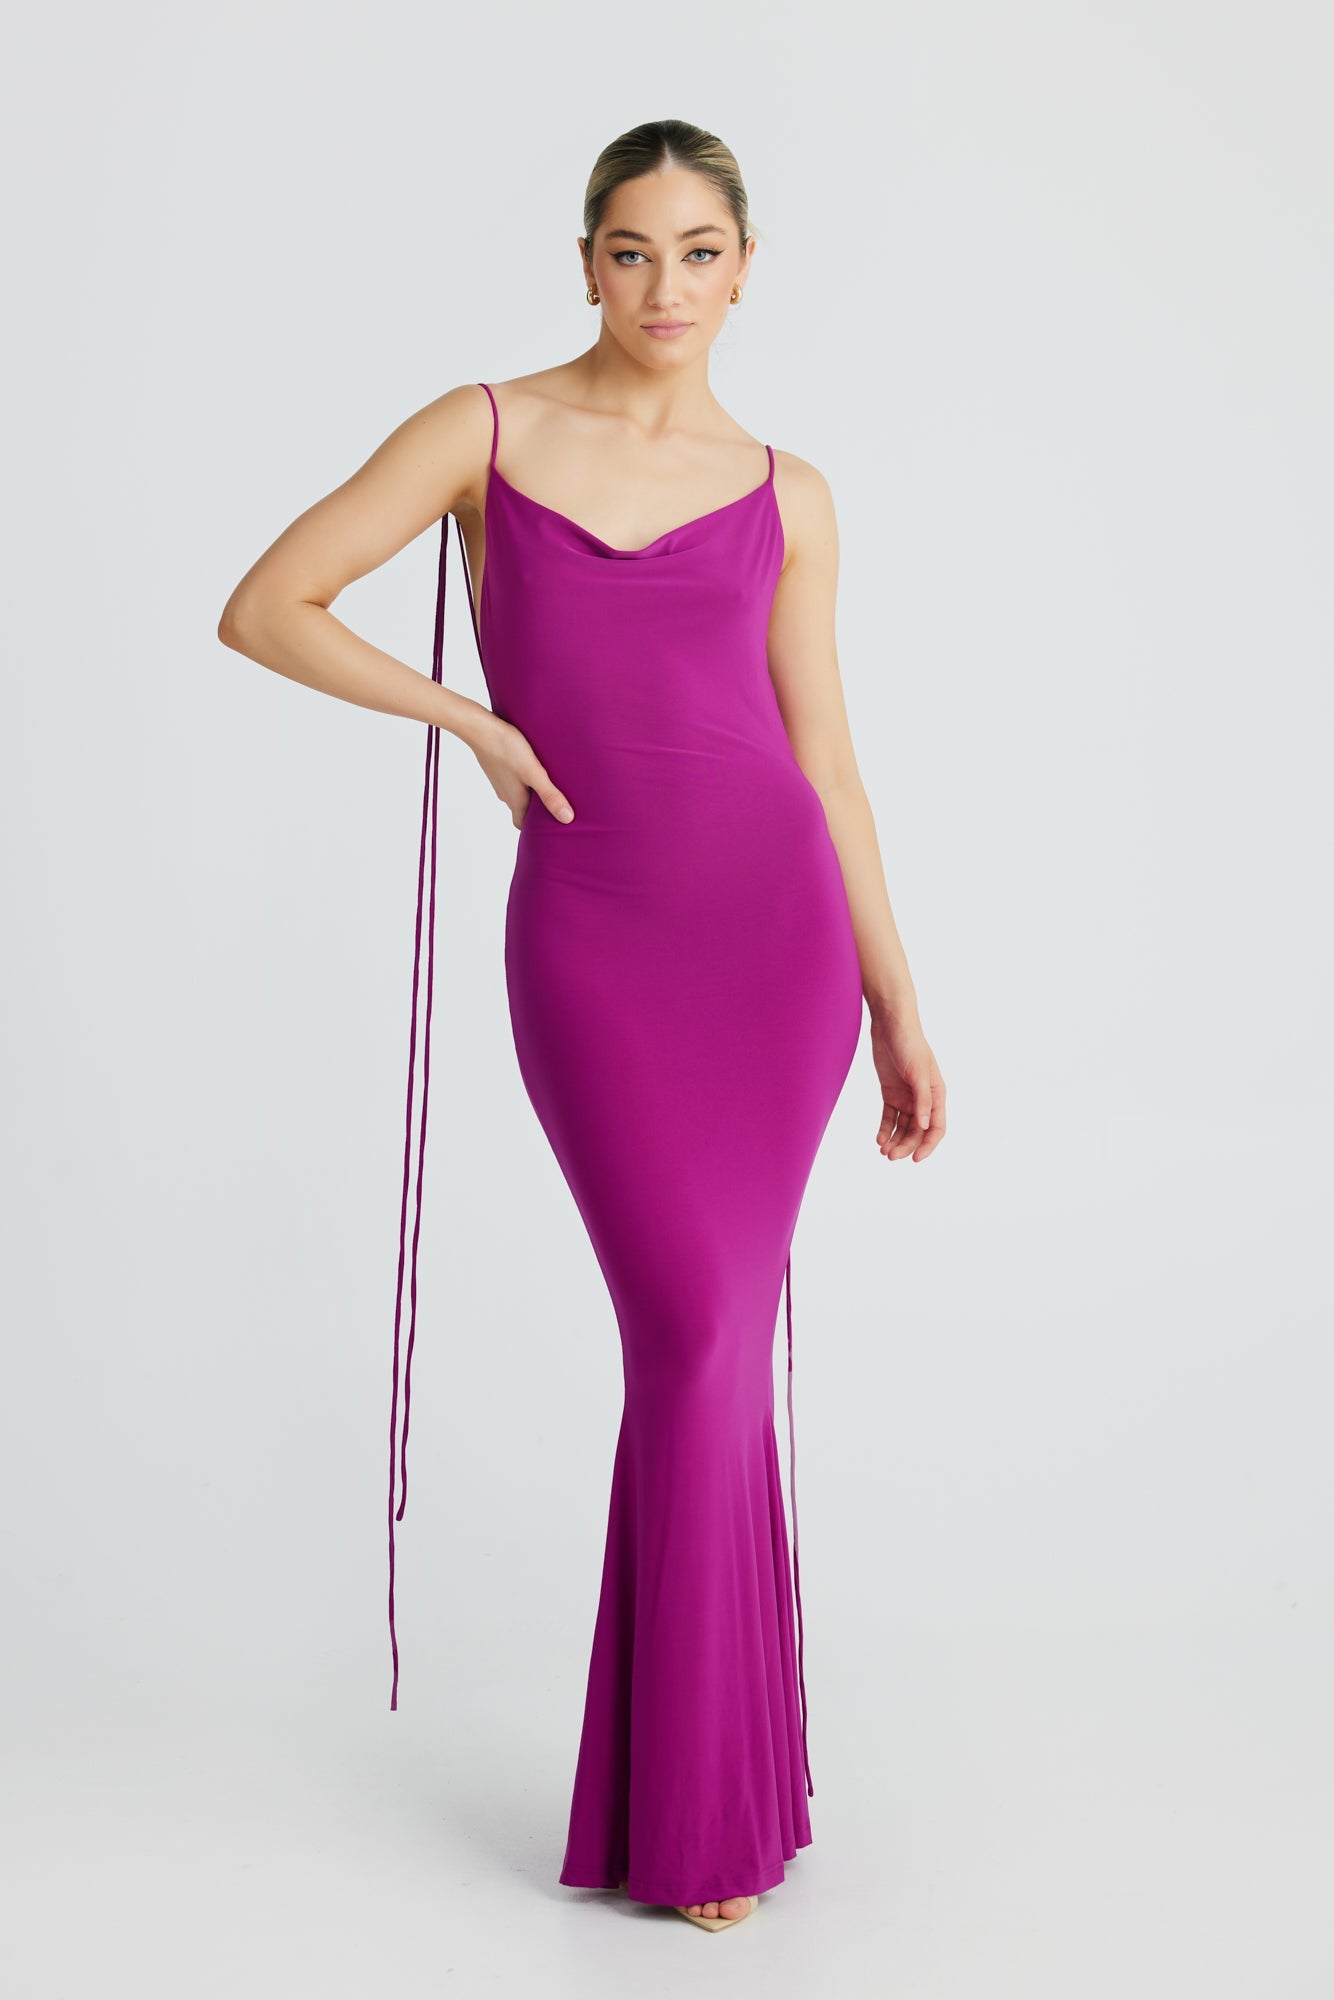 MÉLANI The Label CRISTINA Purple Drape Low Back Dress